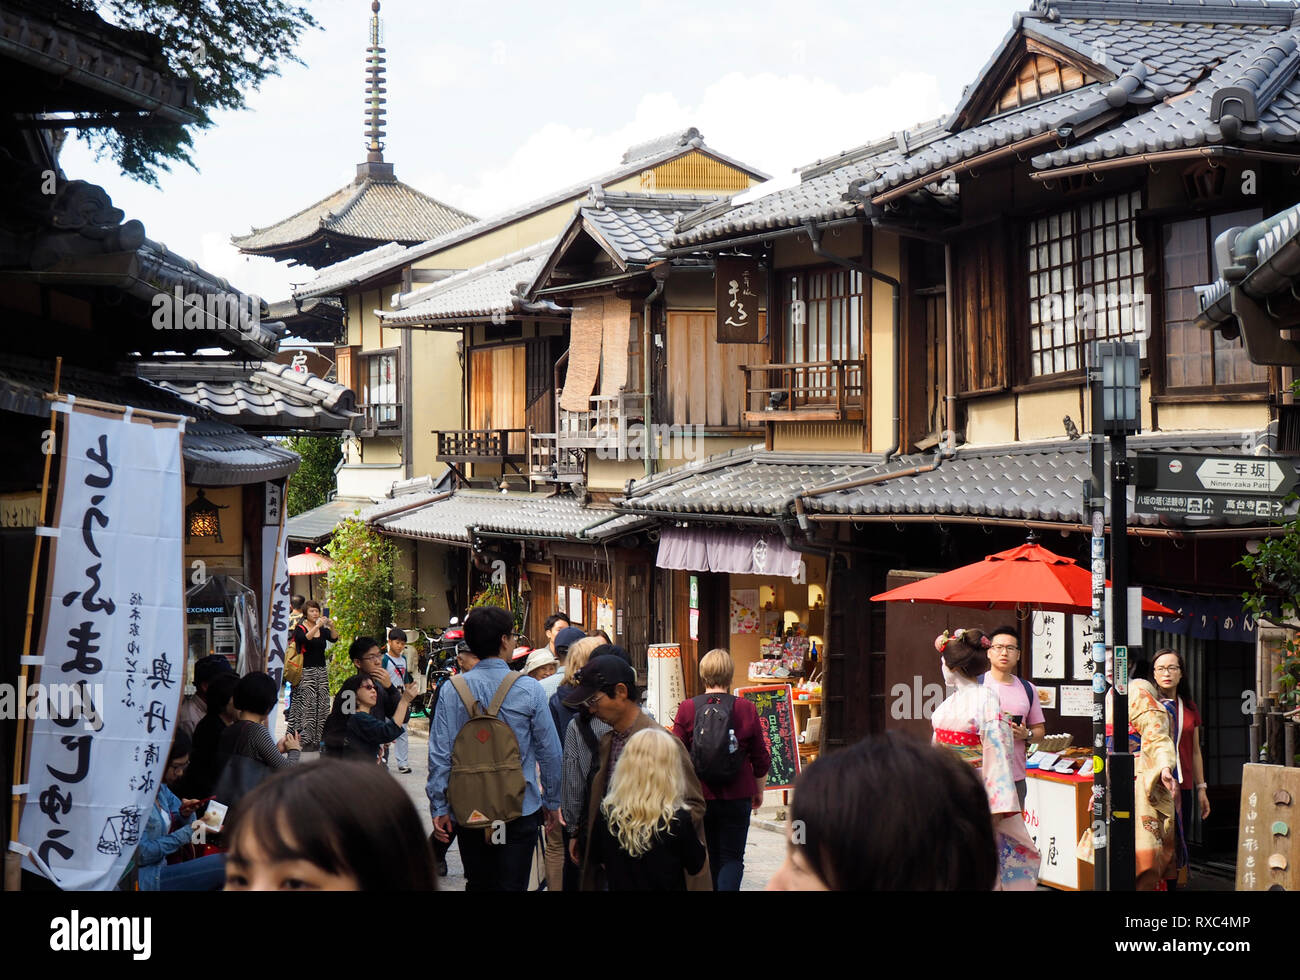 Kyoto, Giappone - 15 OTT 2018: la strada affollata del quartiere storico di Kyoto, Giappone Foto Stock